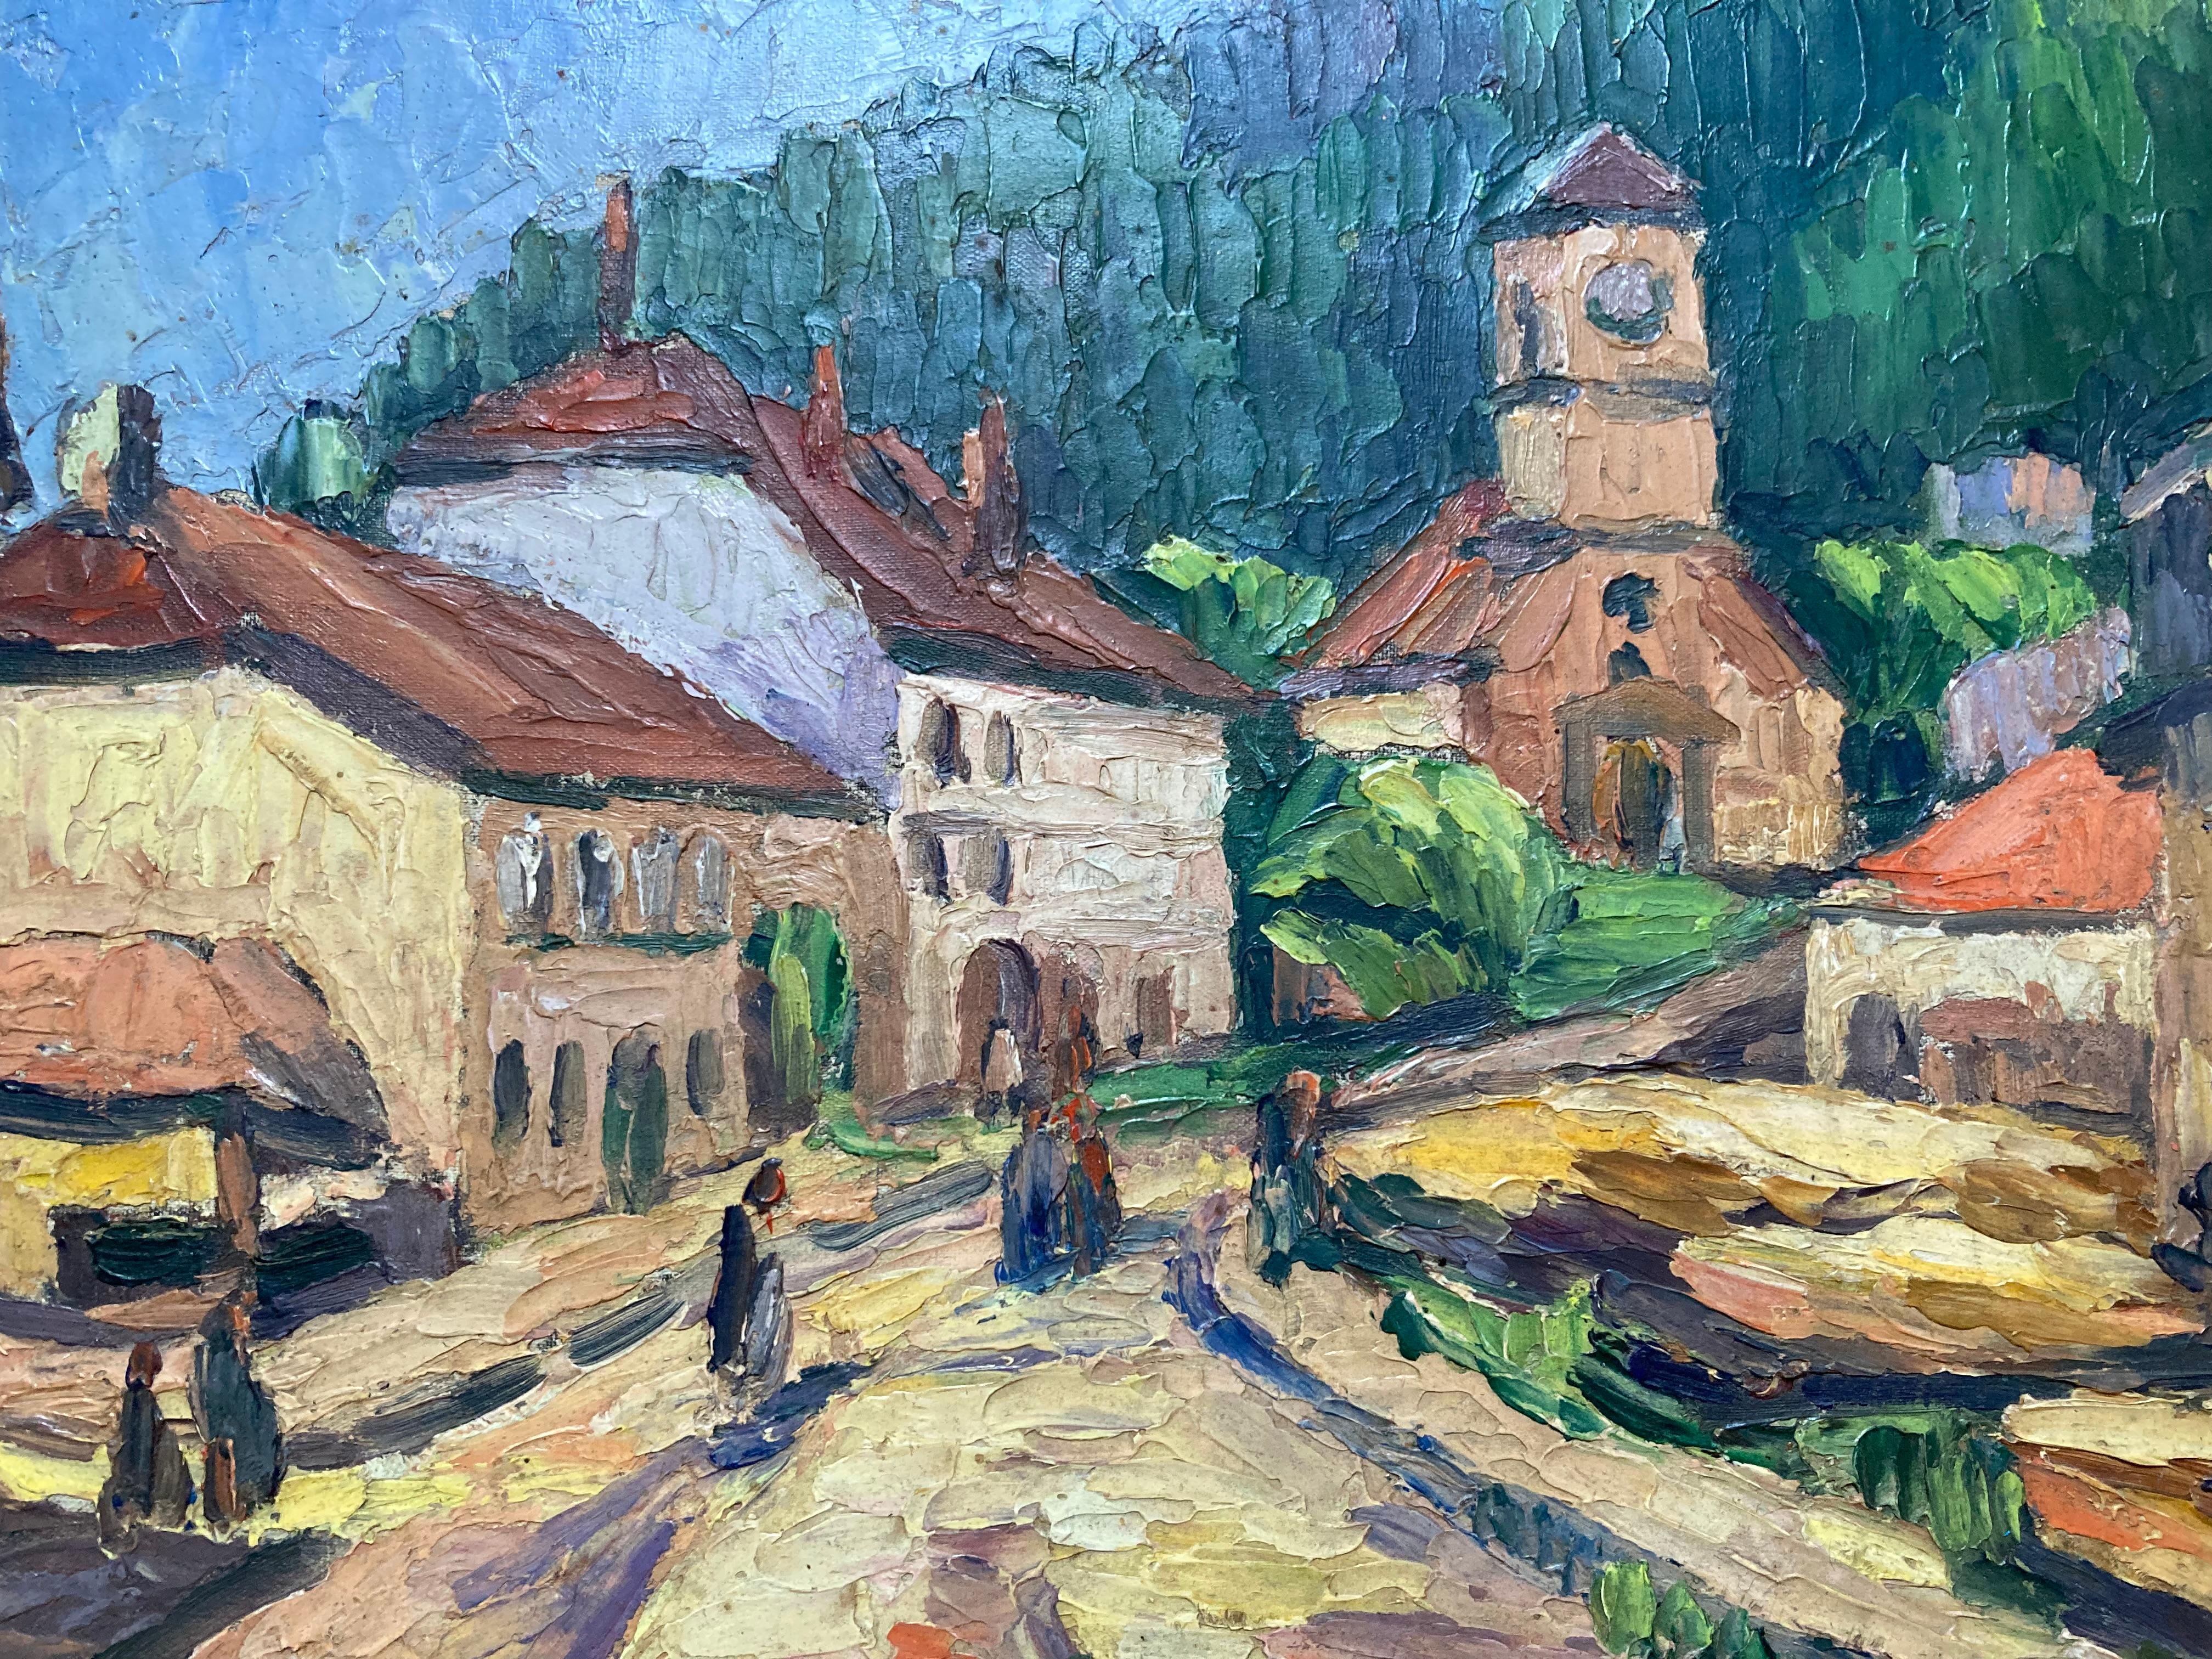 Village Road (20. Jahrhundert, gerahmtes impressionistisches europäisches Landschaftsgemälde) – Painting von Raymond Benanose